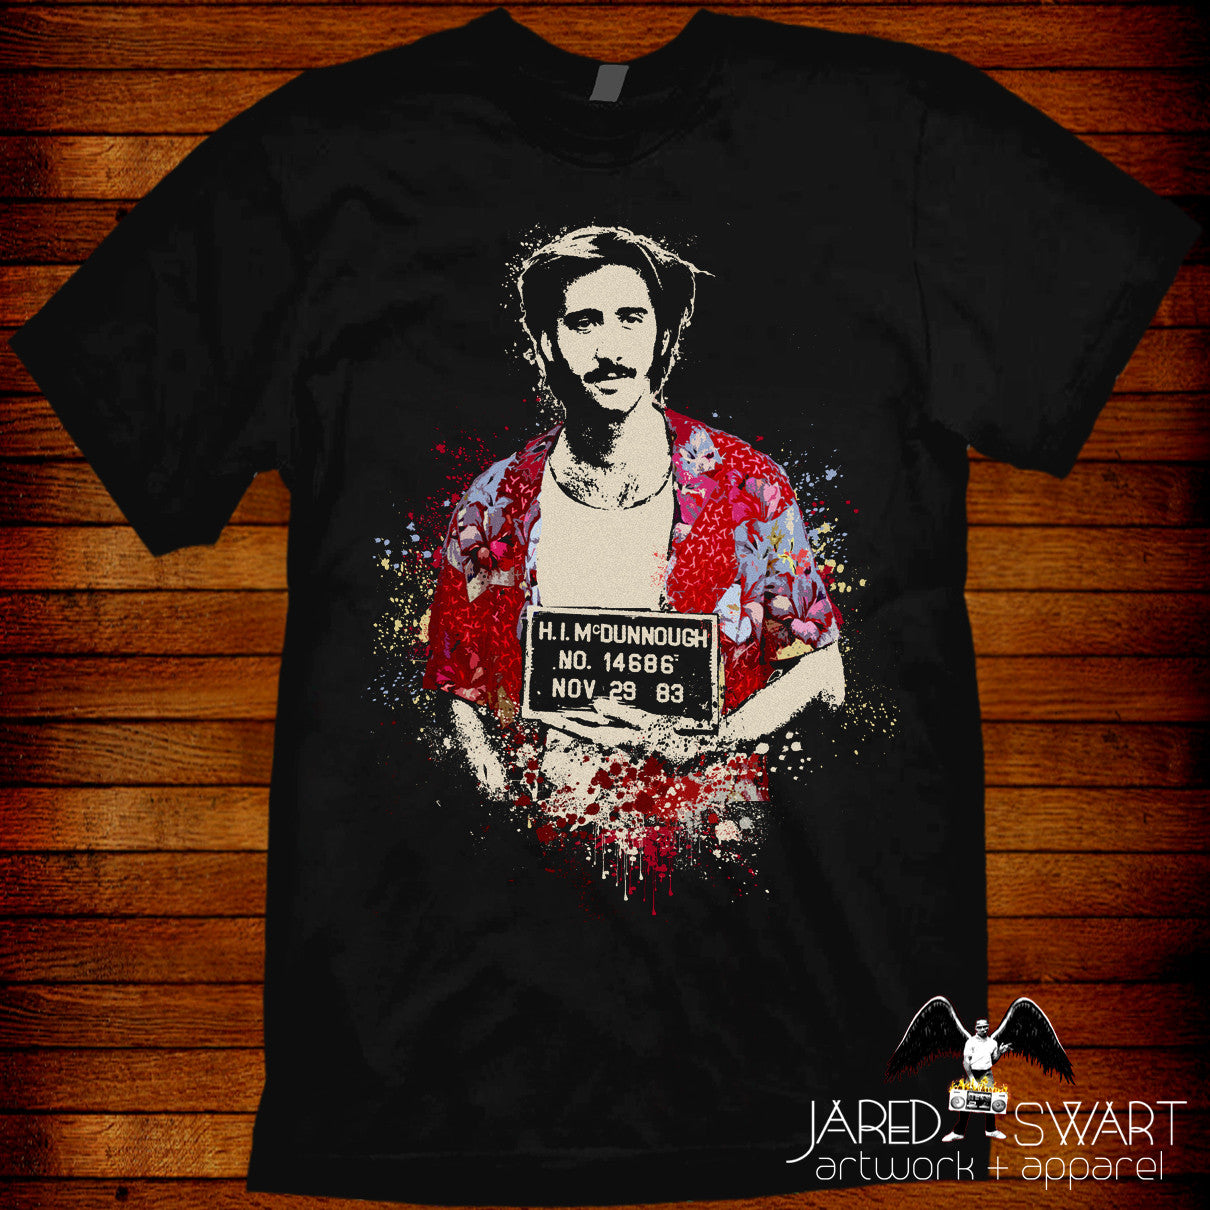 Raising Arizona T-shirt artwork Jared – by 1987 Coen Swart b inspired by